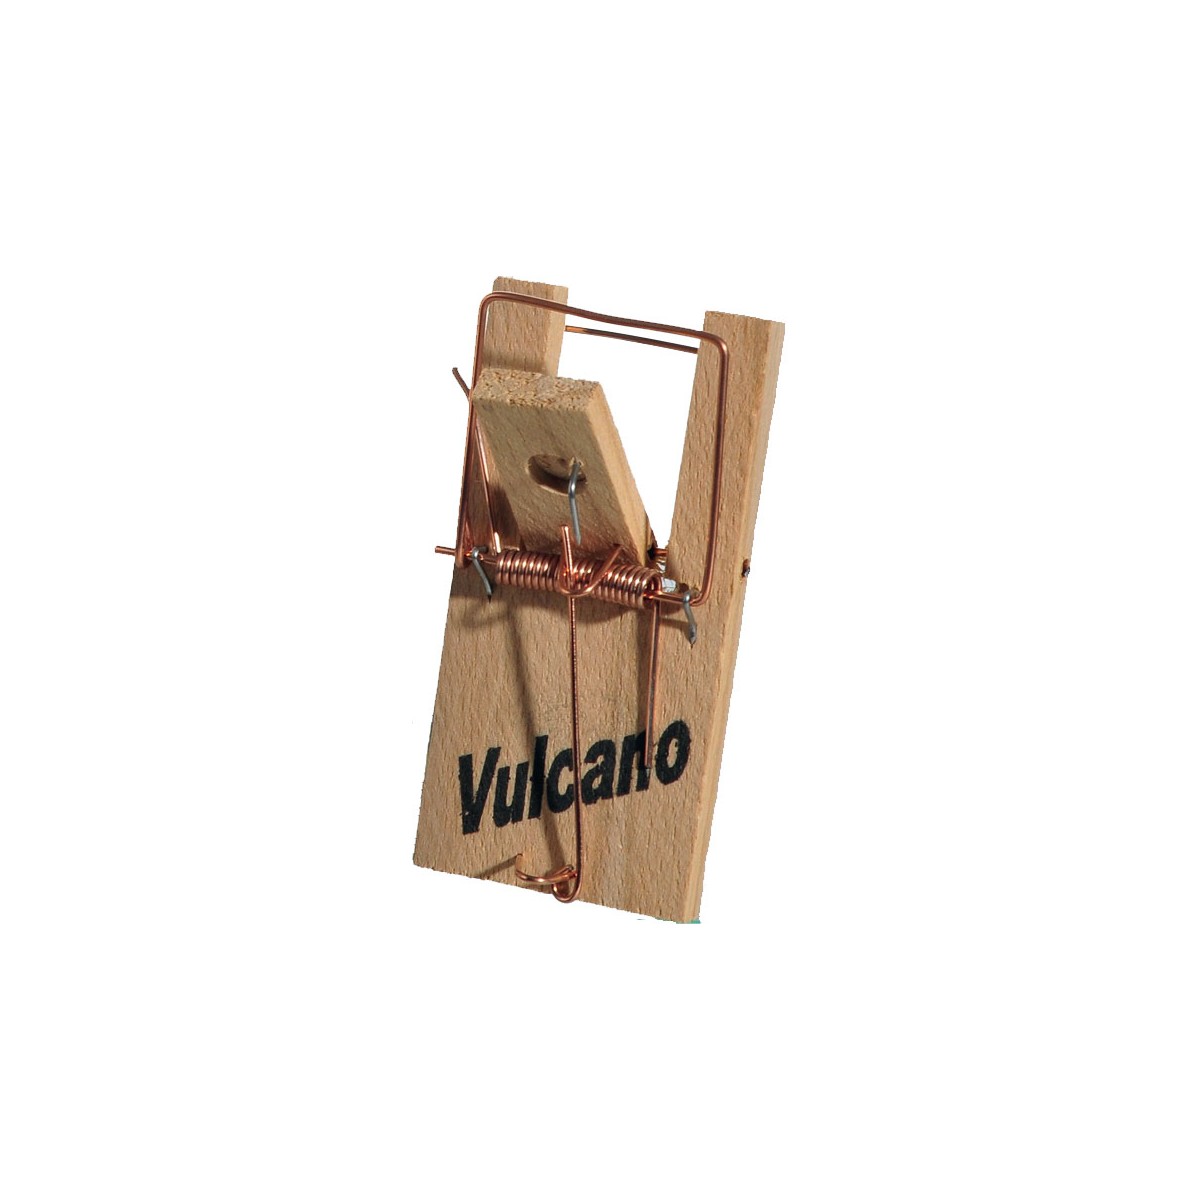 Vulcano Tapette souris en bois de hêtre - Shop Nuisibles